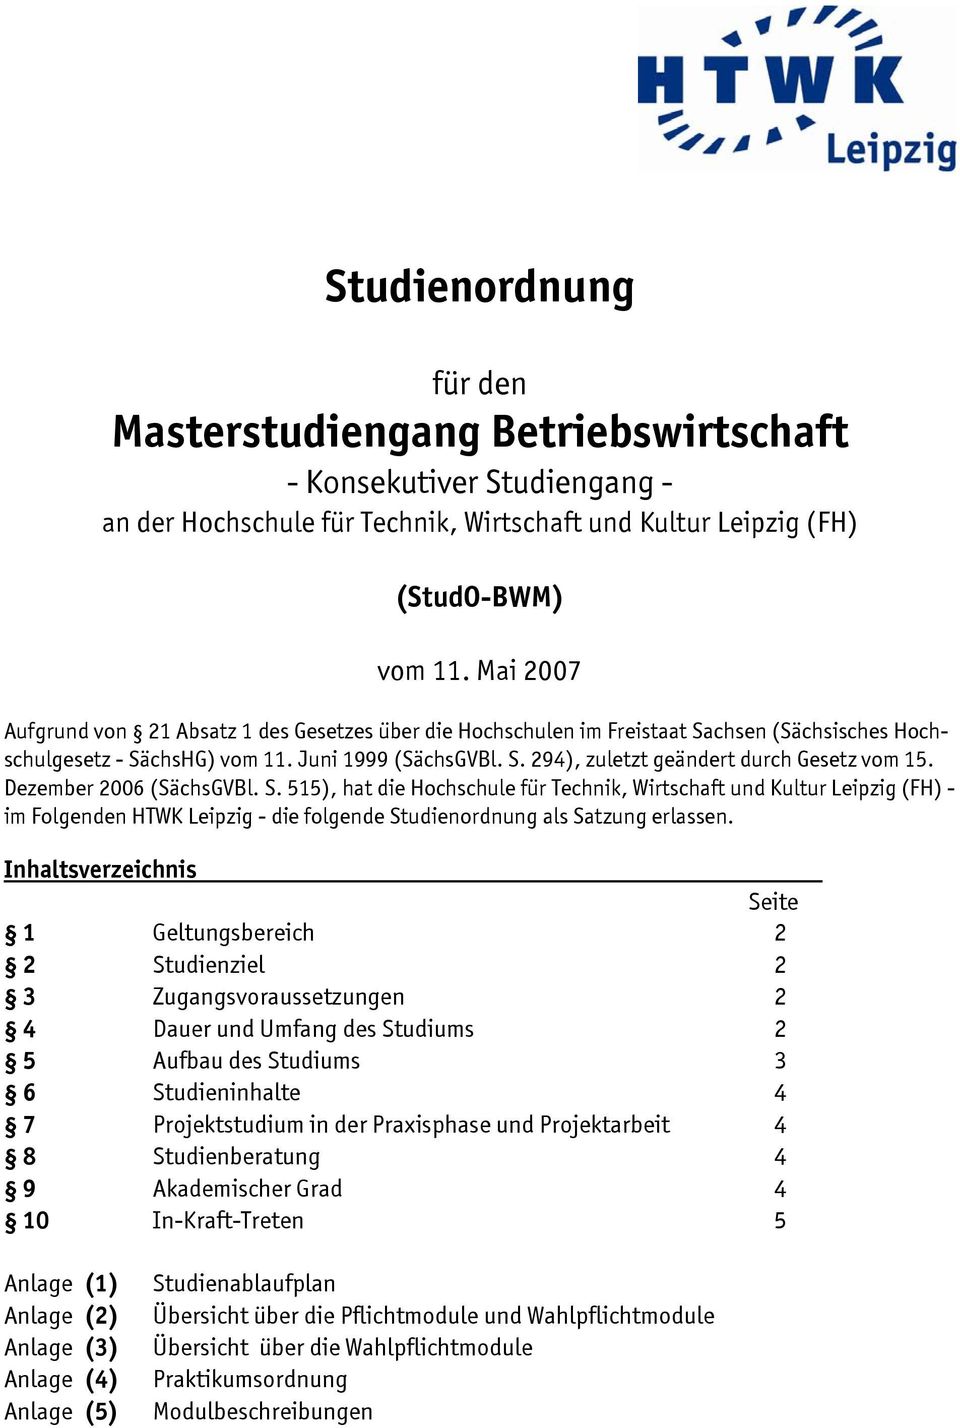 Dezember 2006 (SächsGVBl. S. 1), hat die Hochschule für Technik, Wirtschaft Kultur Leipzig (FH) - im Folgenden HTWK Leipzig - die folgende Studienordnung als Satzung erlassen.